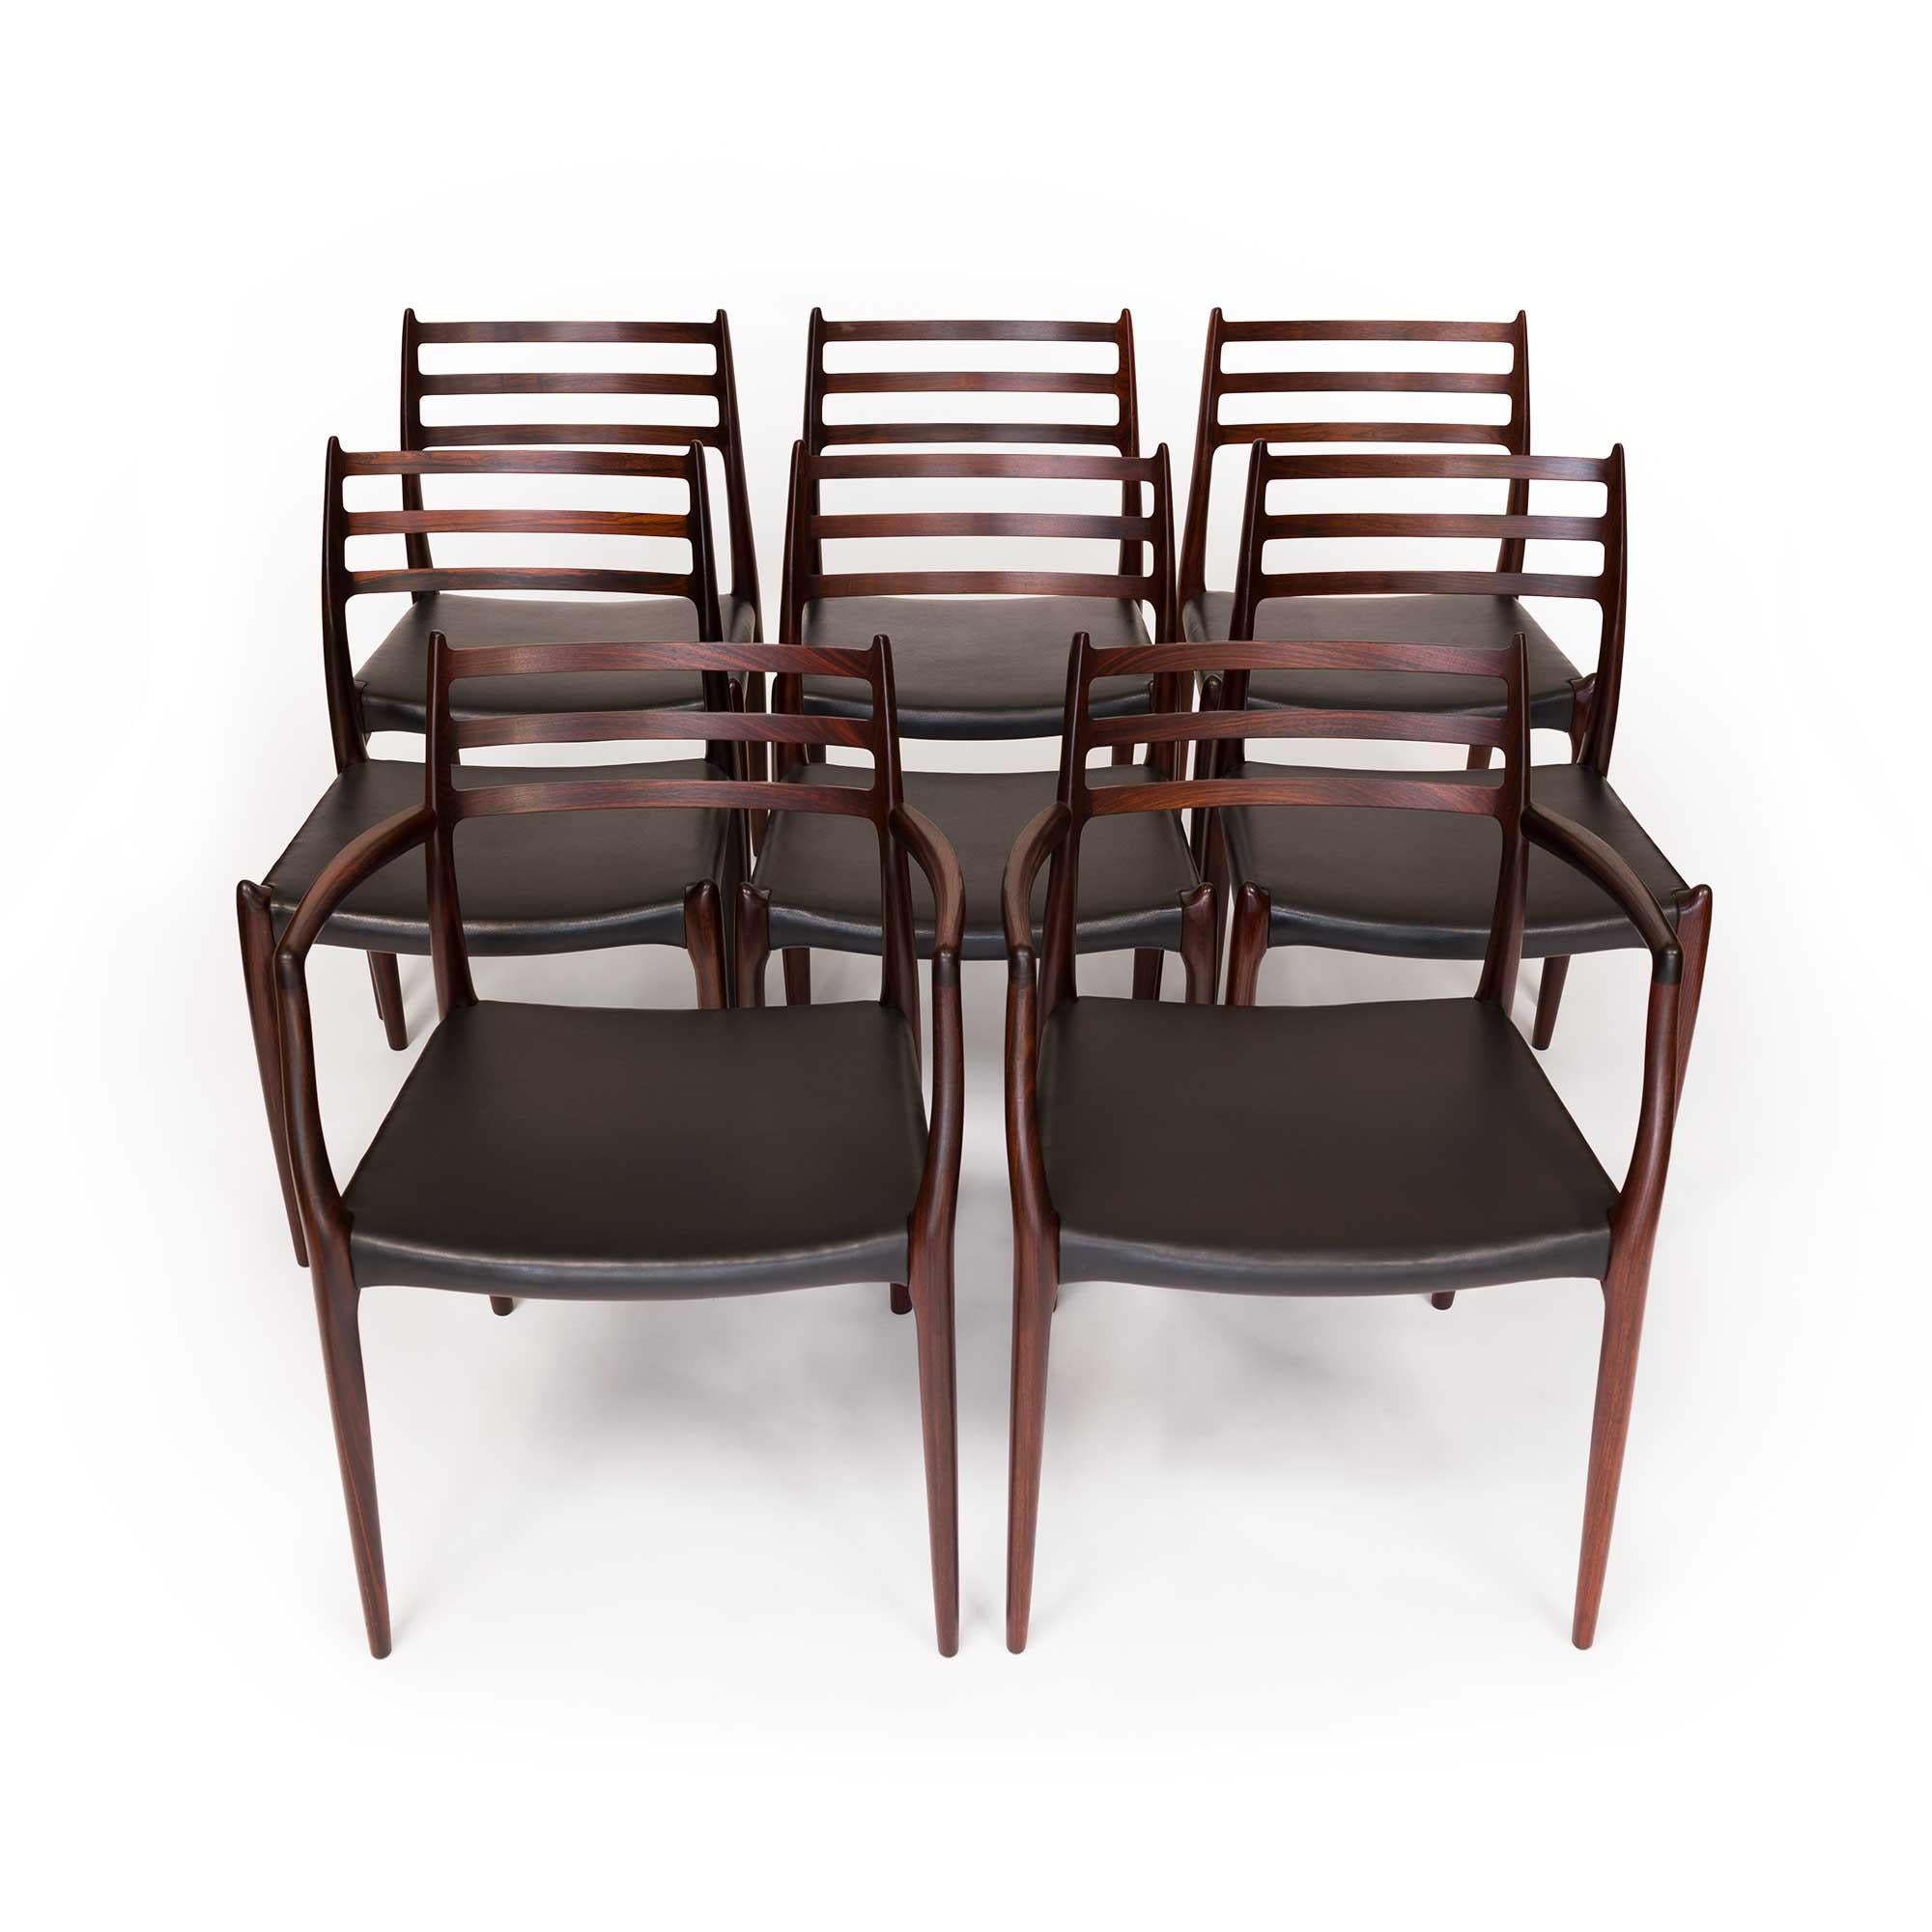 Niels Otto Møller, éminent designer de meubles danois et fondateur de la société J.L.A. Møllers Møbelfabrik, a laissé une marque indélébile sur le design moderne du milieu du siècle. Réputé pour ses chaises en bois magnifiquement travaillées, les